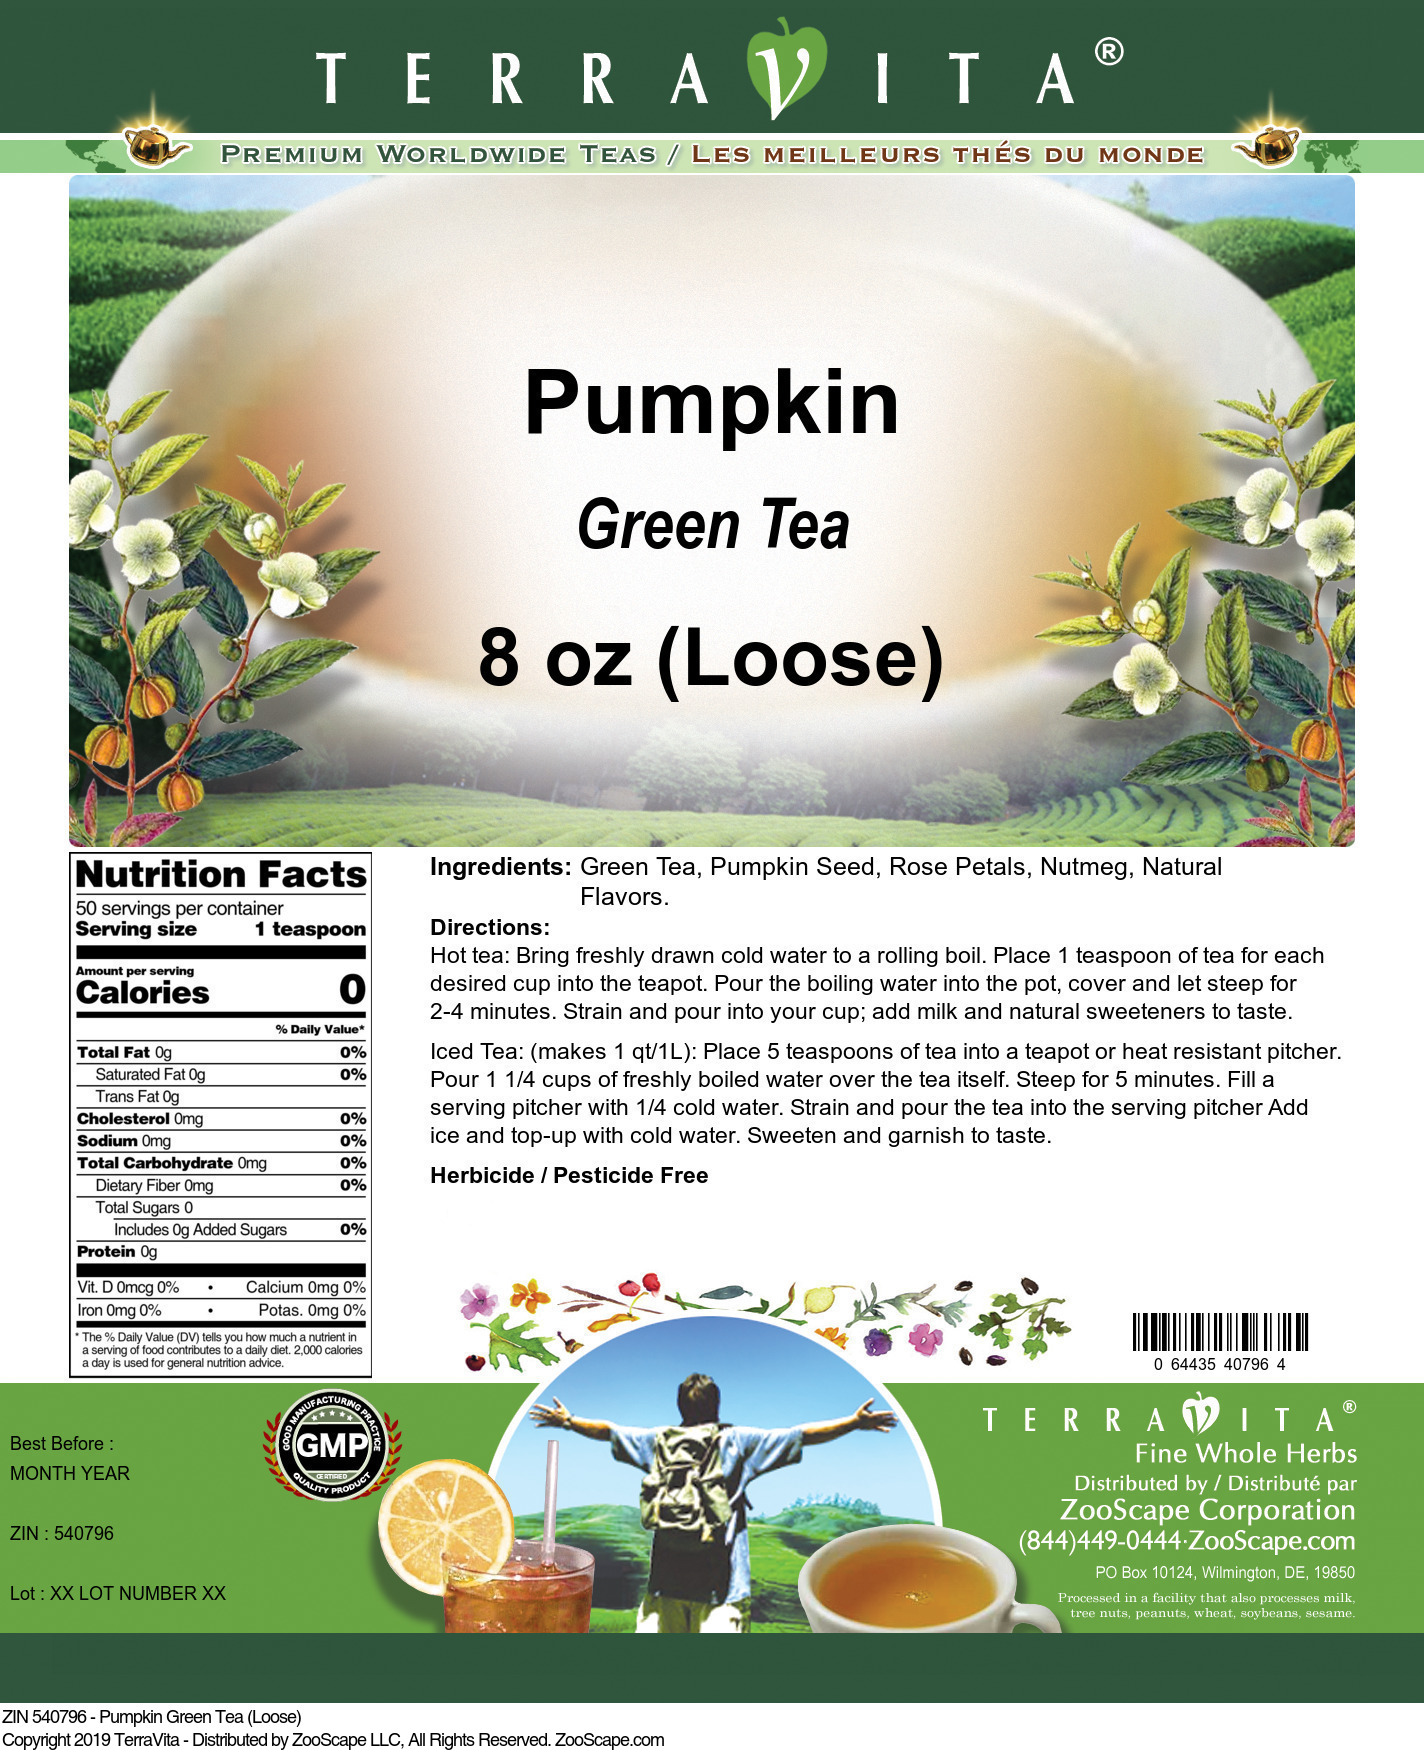 Pumpkin Green Tea (Loose) - Label